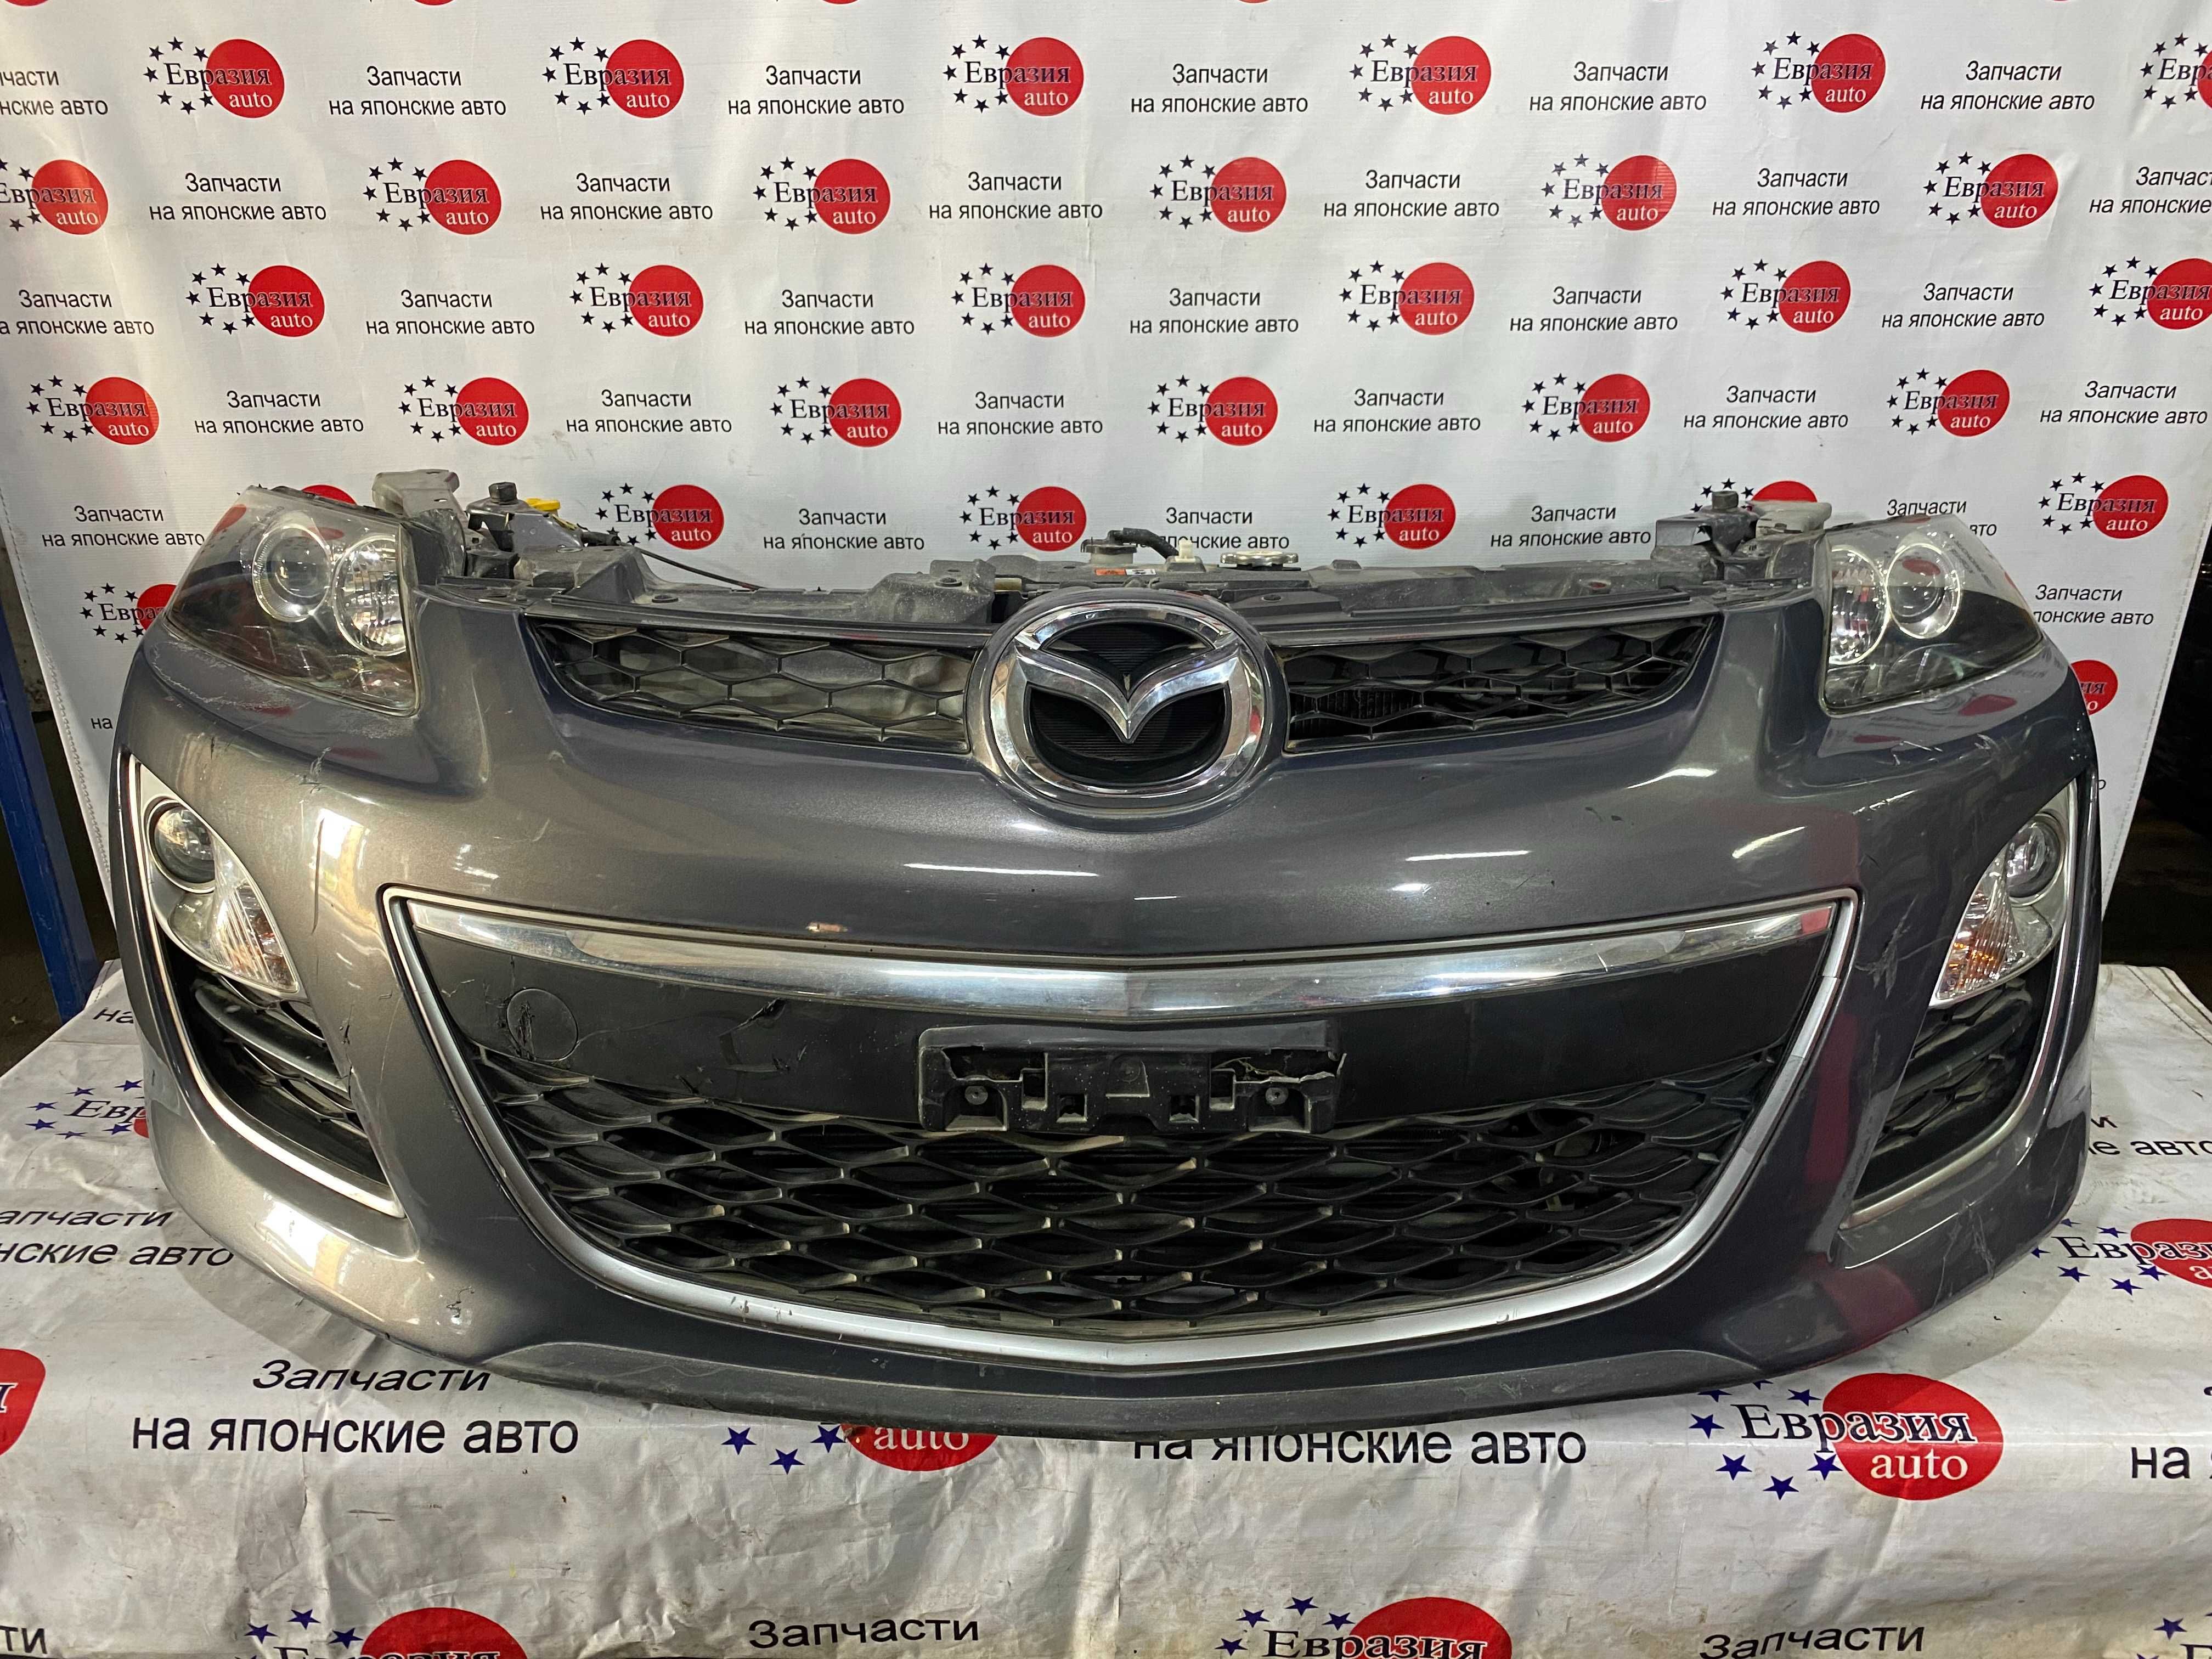 Ноускат носик Мазда СХ-7 Mazda CX-7 2011 г.в. из Японии. Рассрочка.